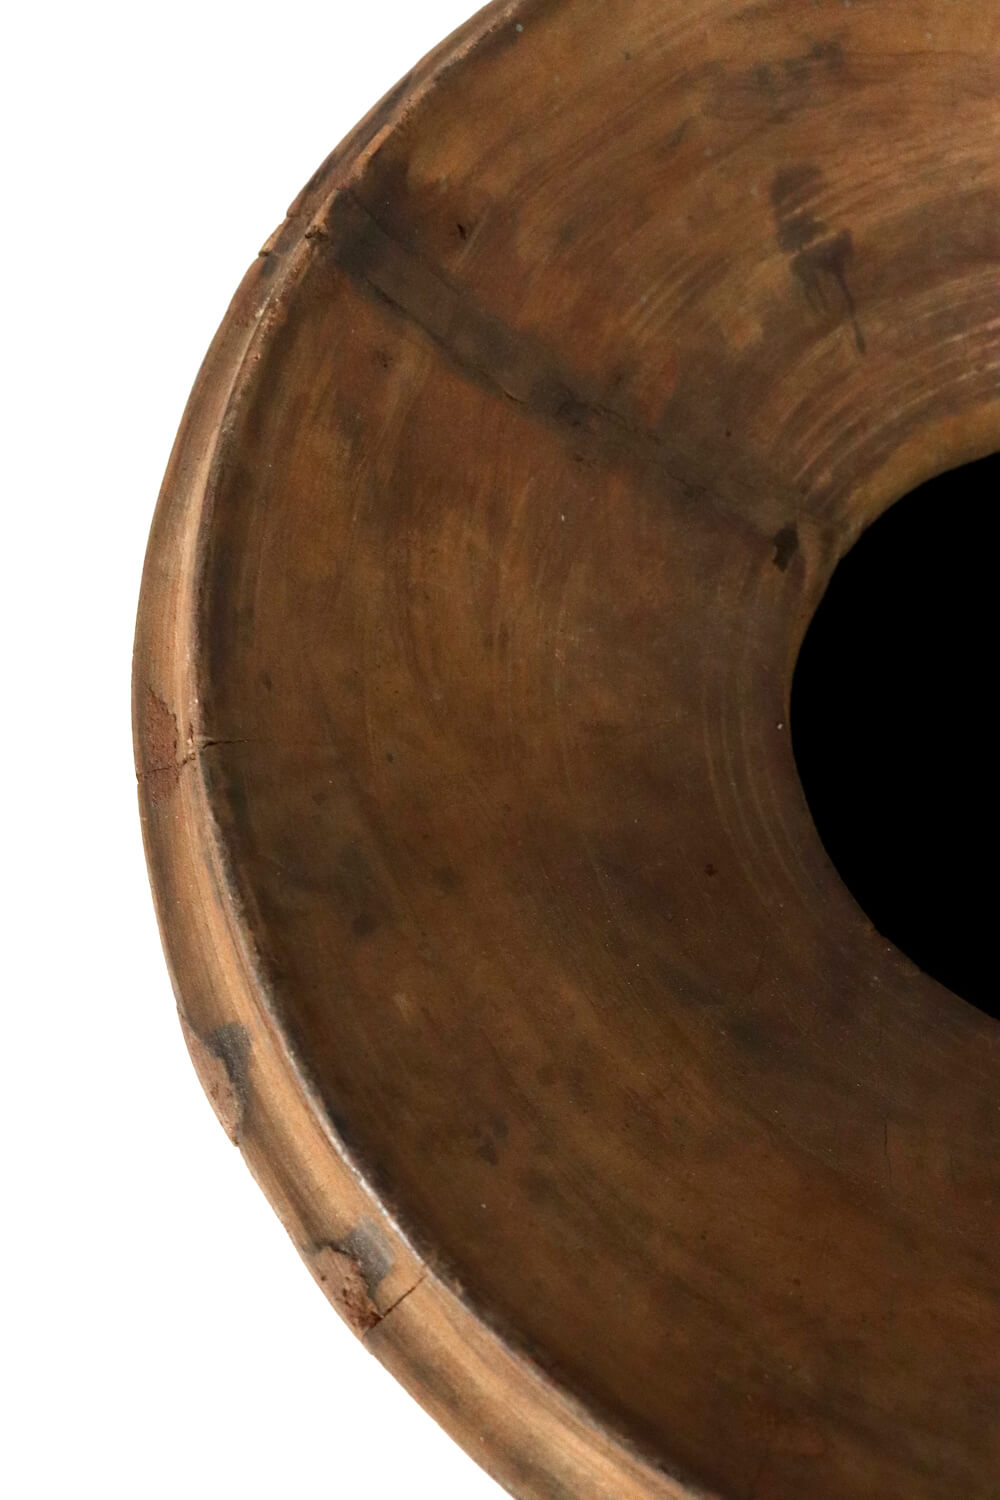 Großer Nepal Pott aus Holz antik 40xø31